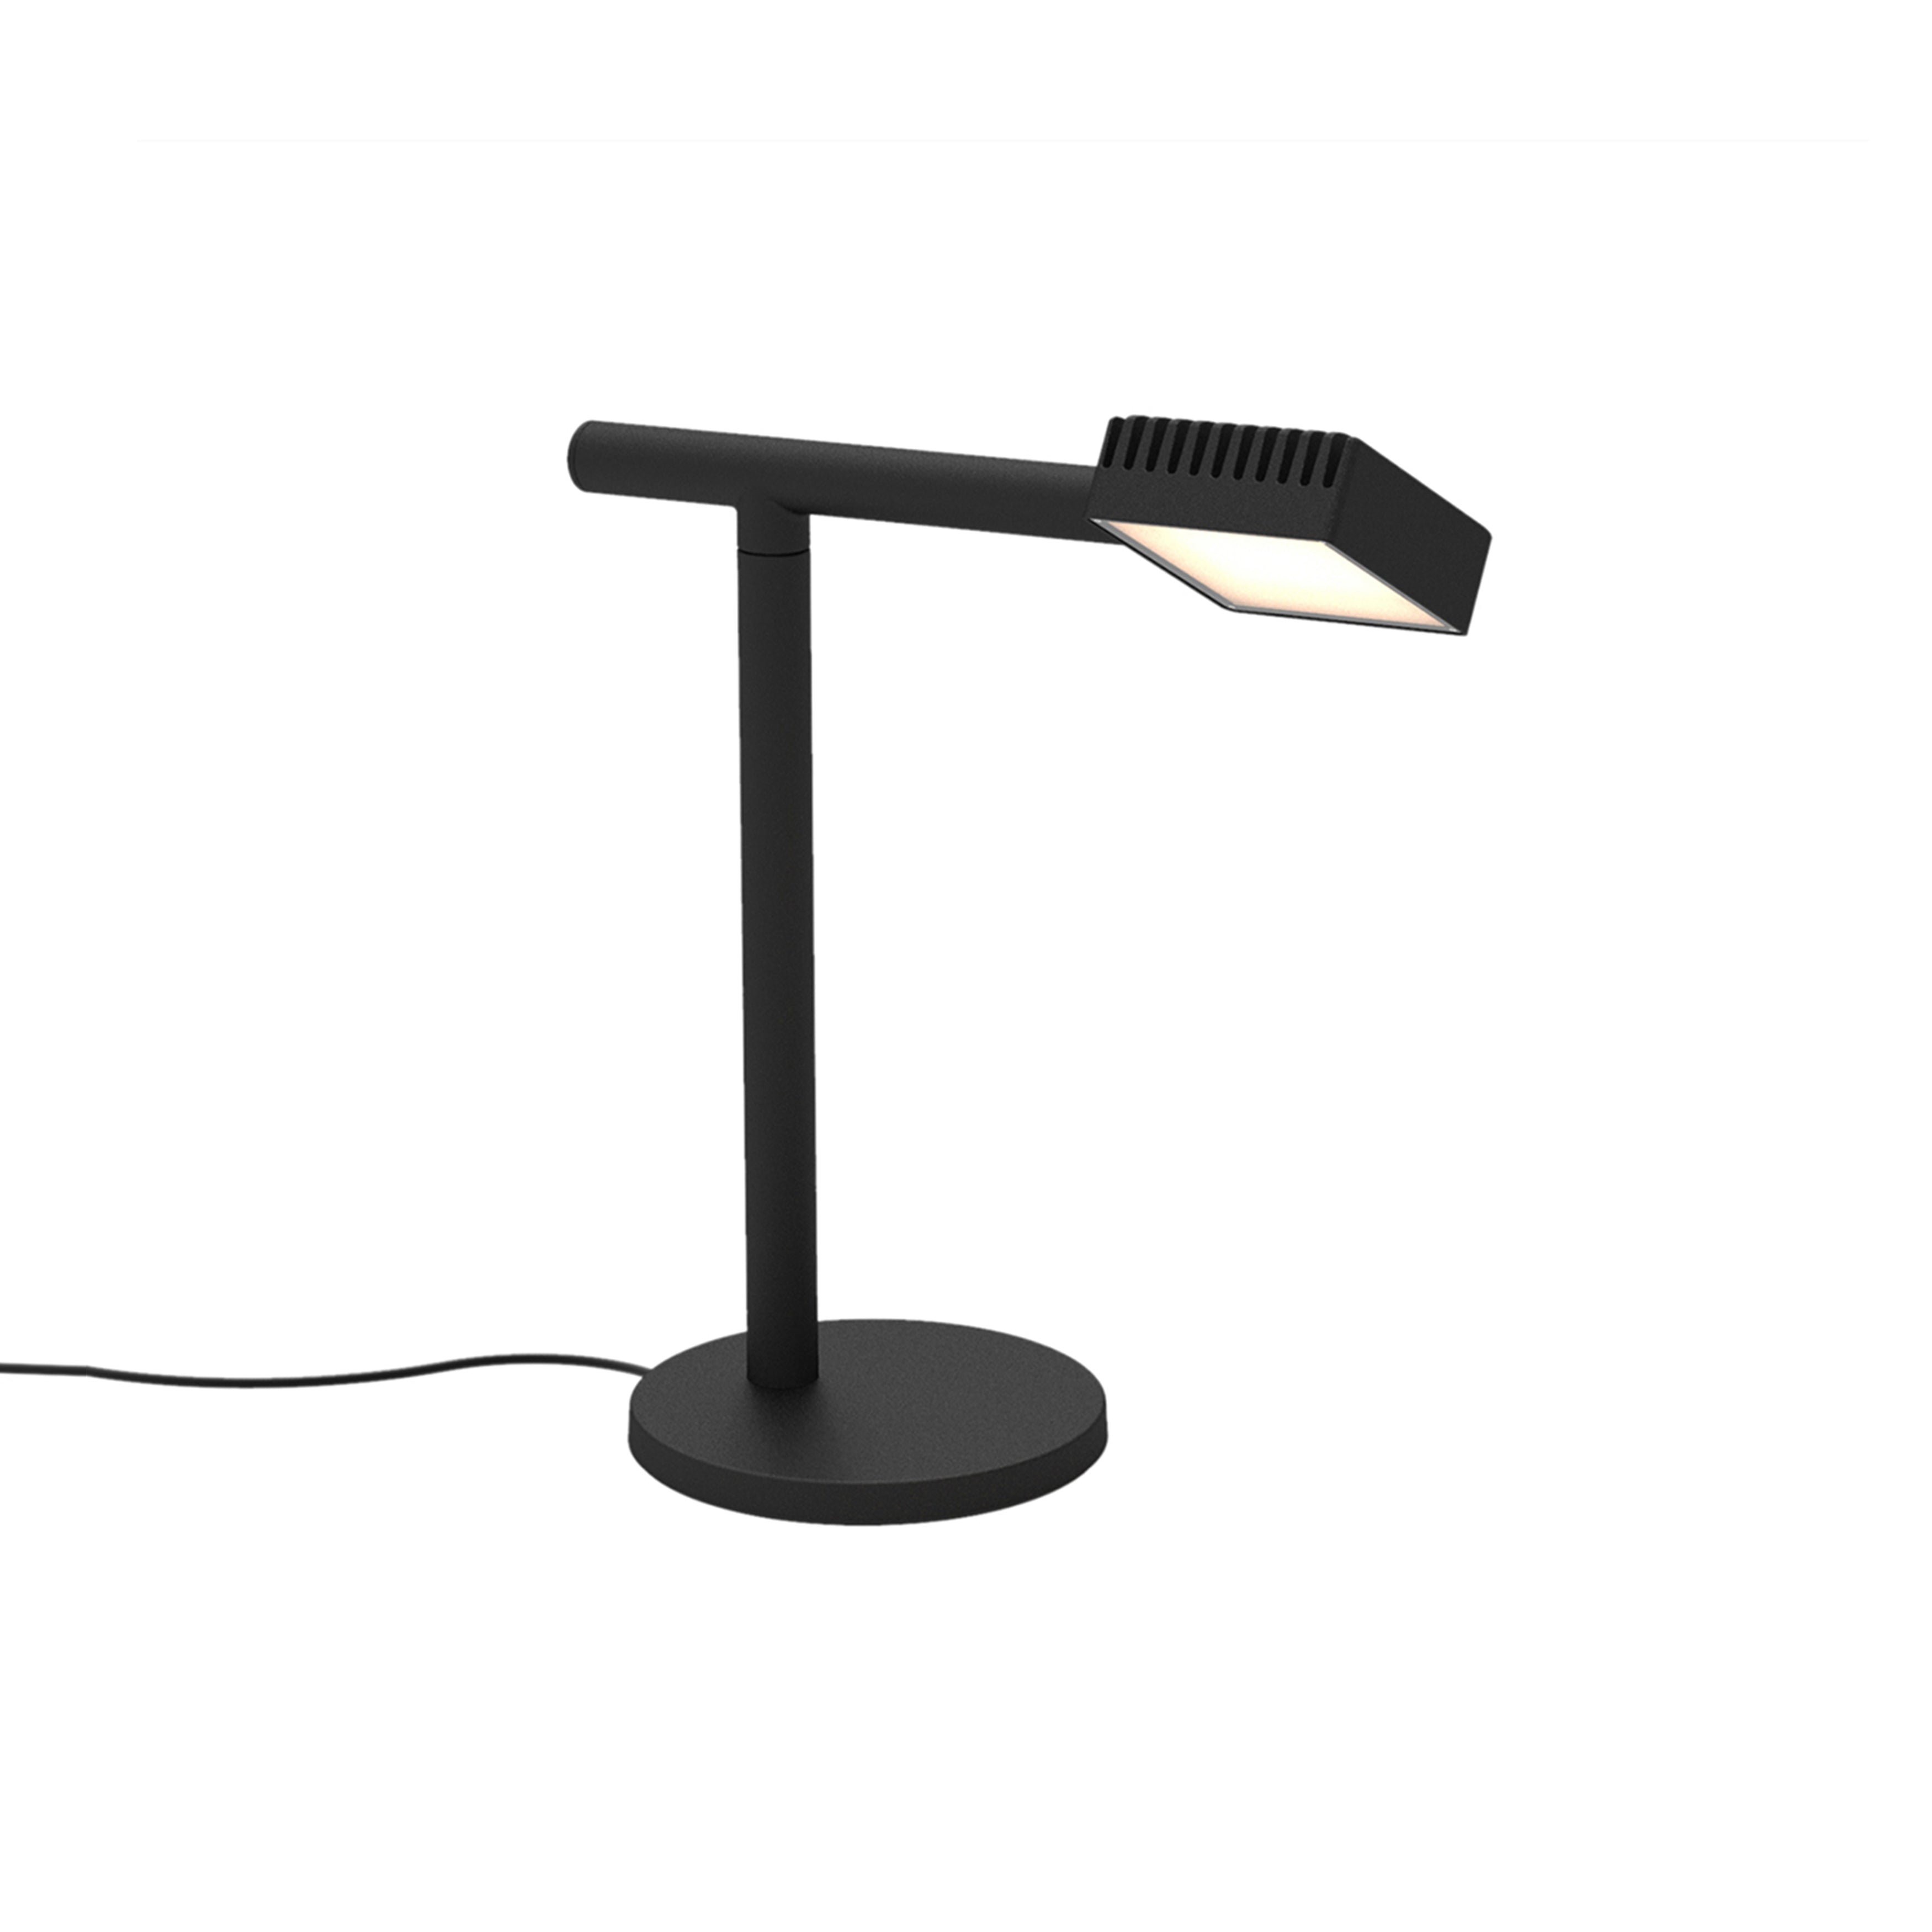 Dorval 02 Table Lamp: Black + Black